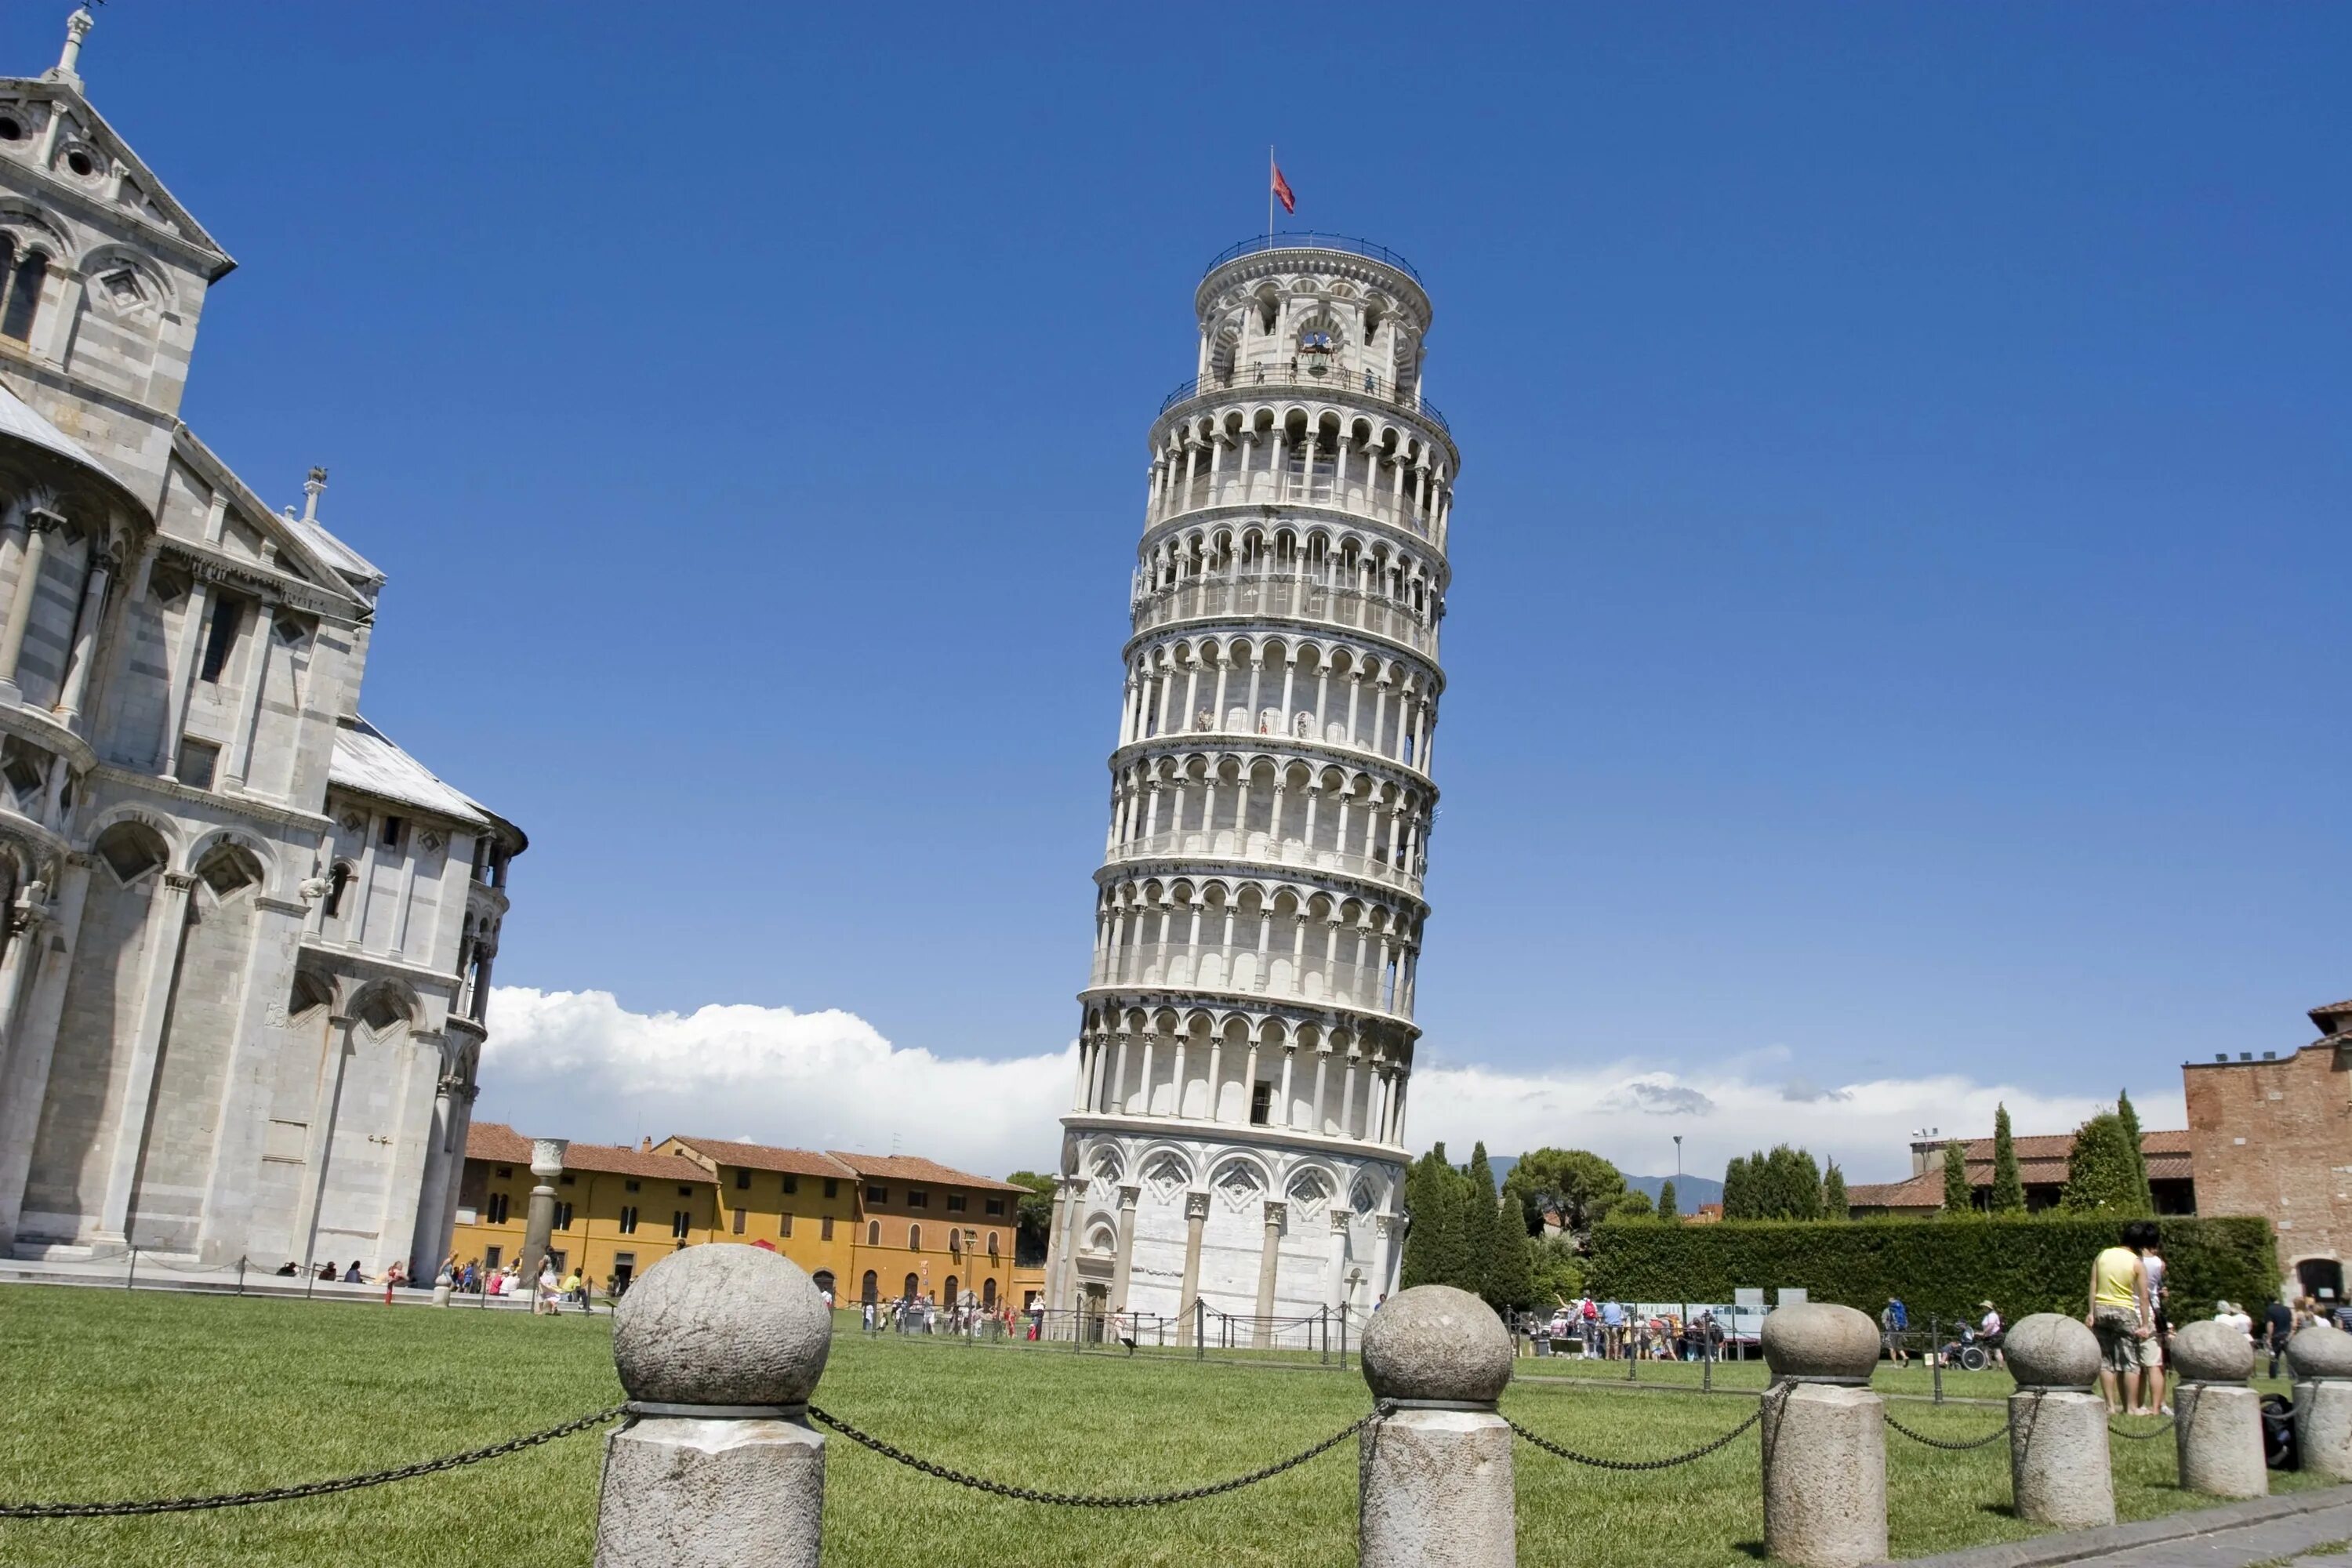 Башня. Пизанская башня Италия. 10. Пизанская башня (Пиза, Италия). Падающая башня в Италии. Пизанская башня (Torre pendente di Pisa).